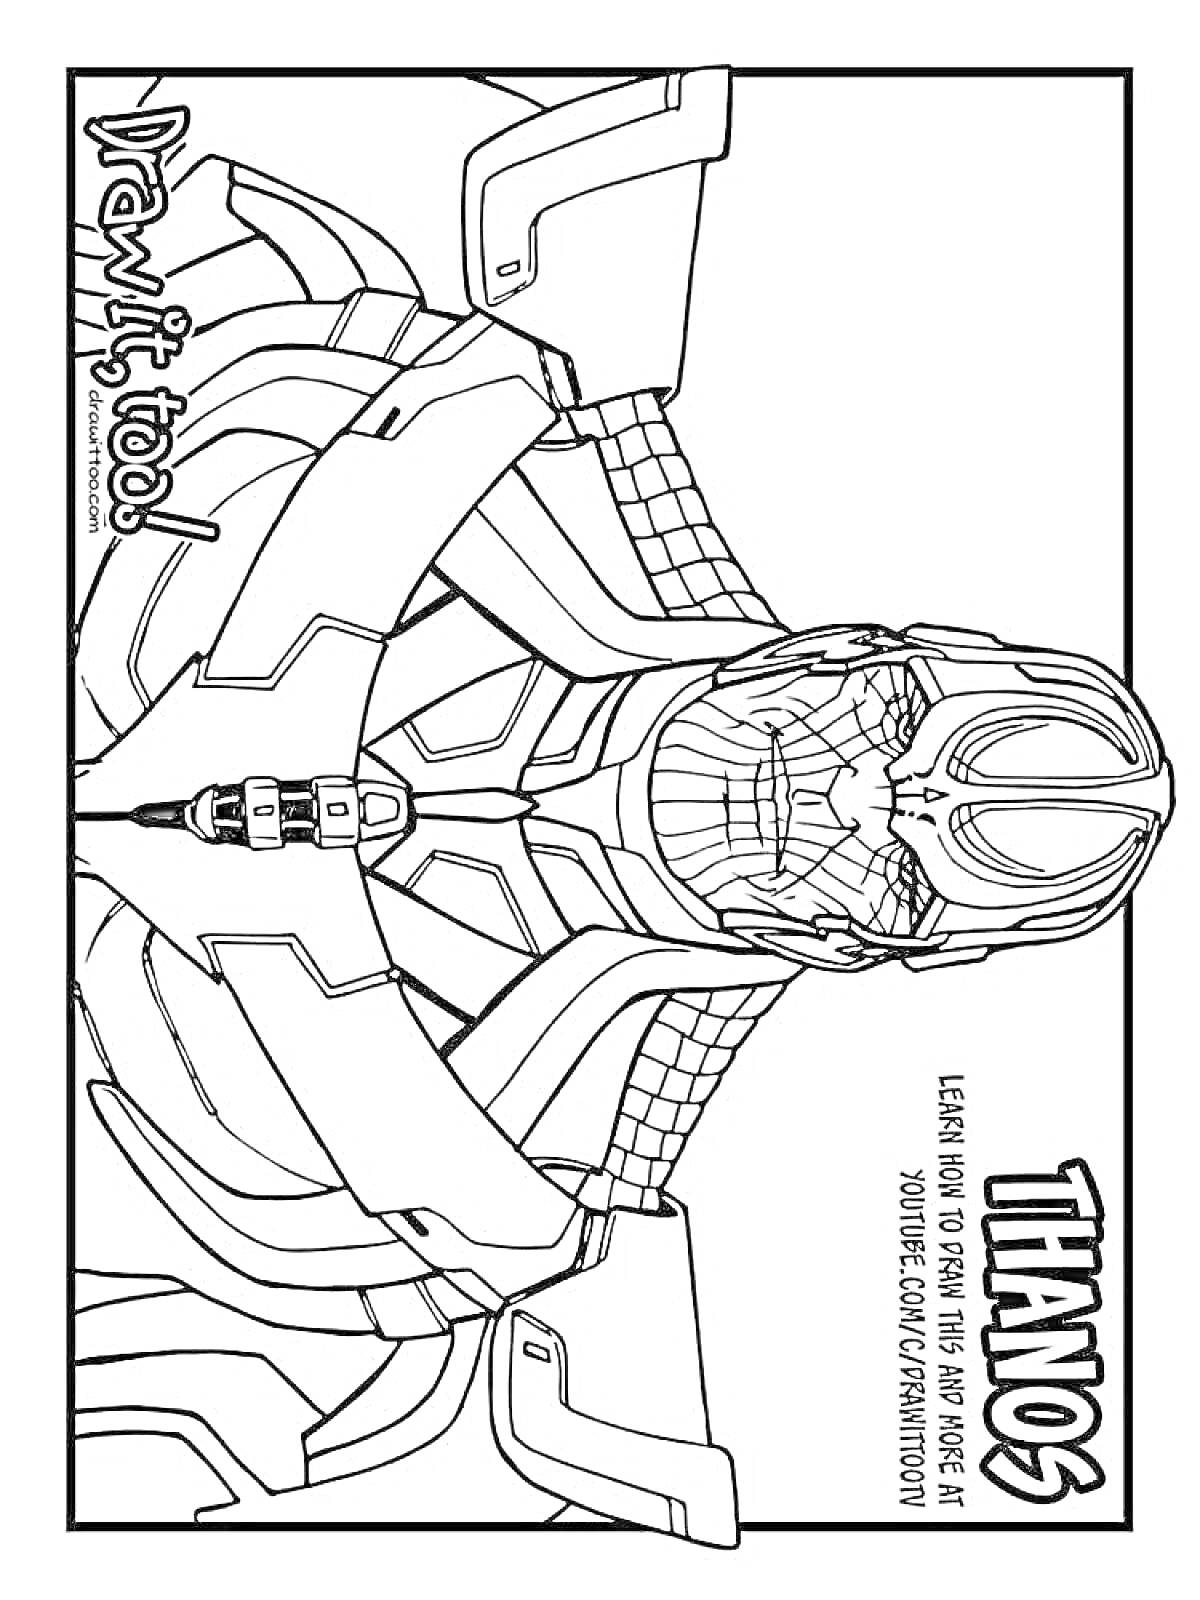 Раскраска Раскраска с изображением Таноса из фильма. Обучающий текст 